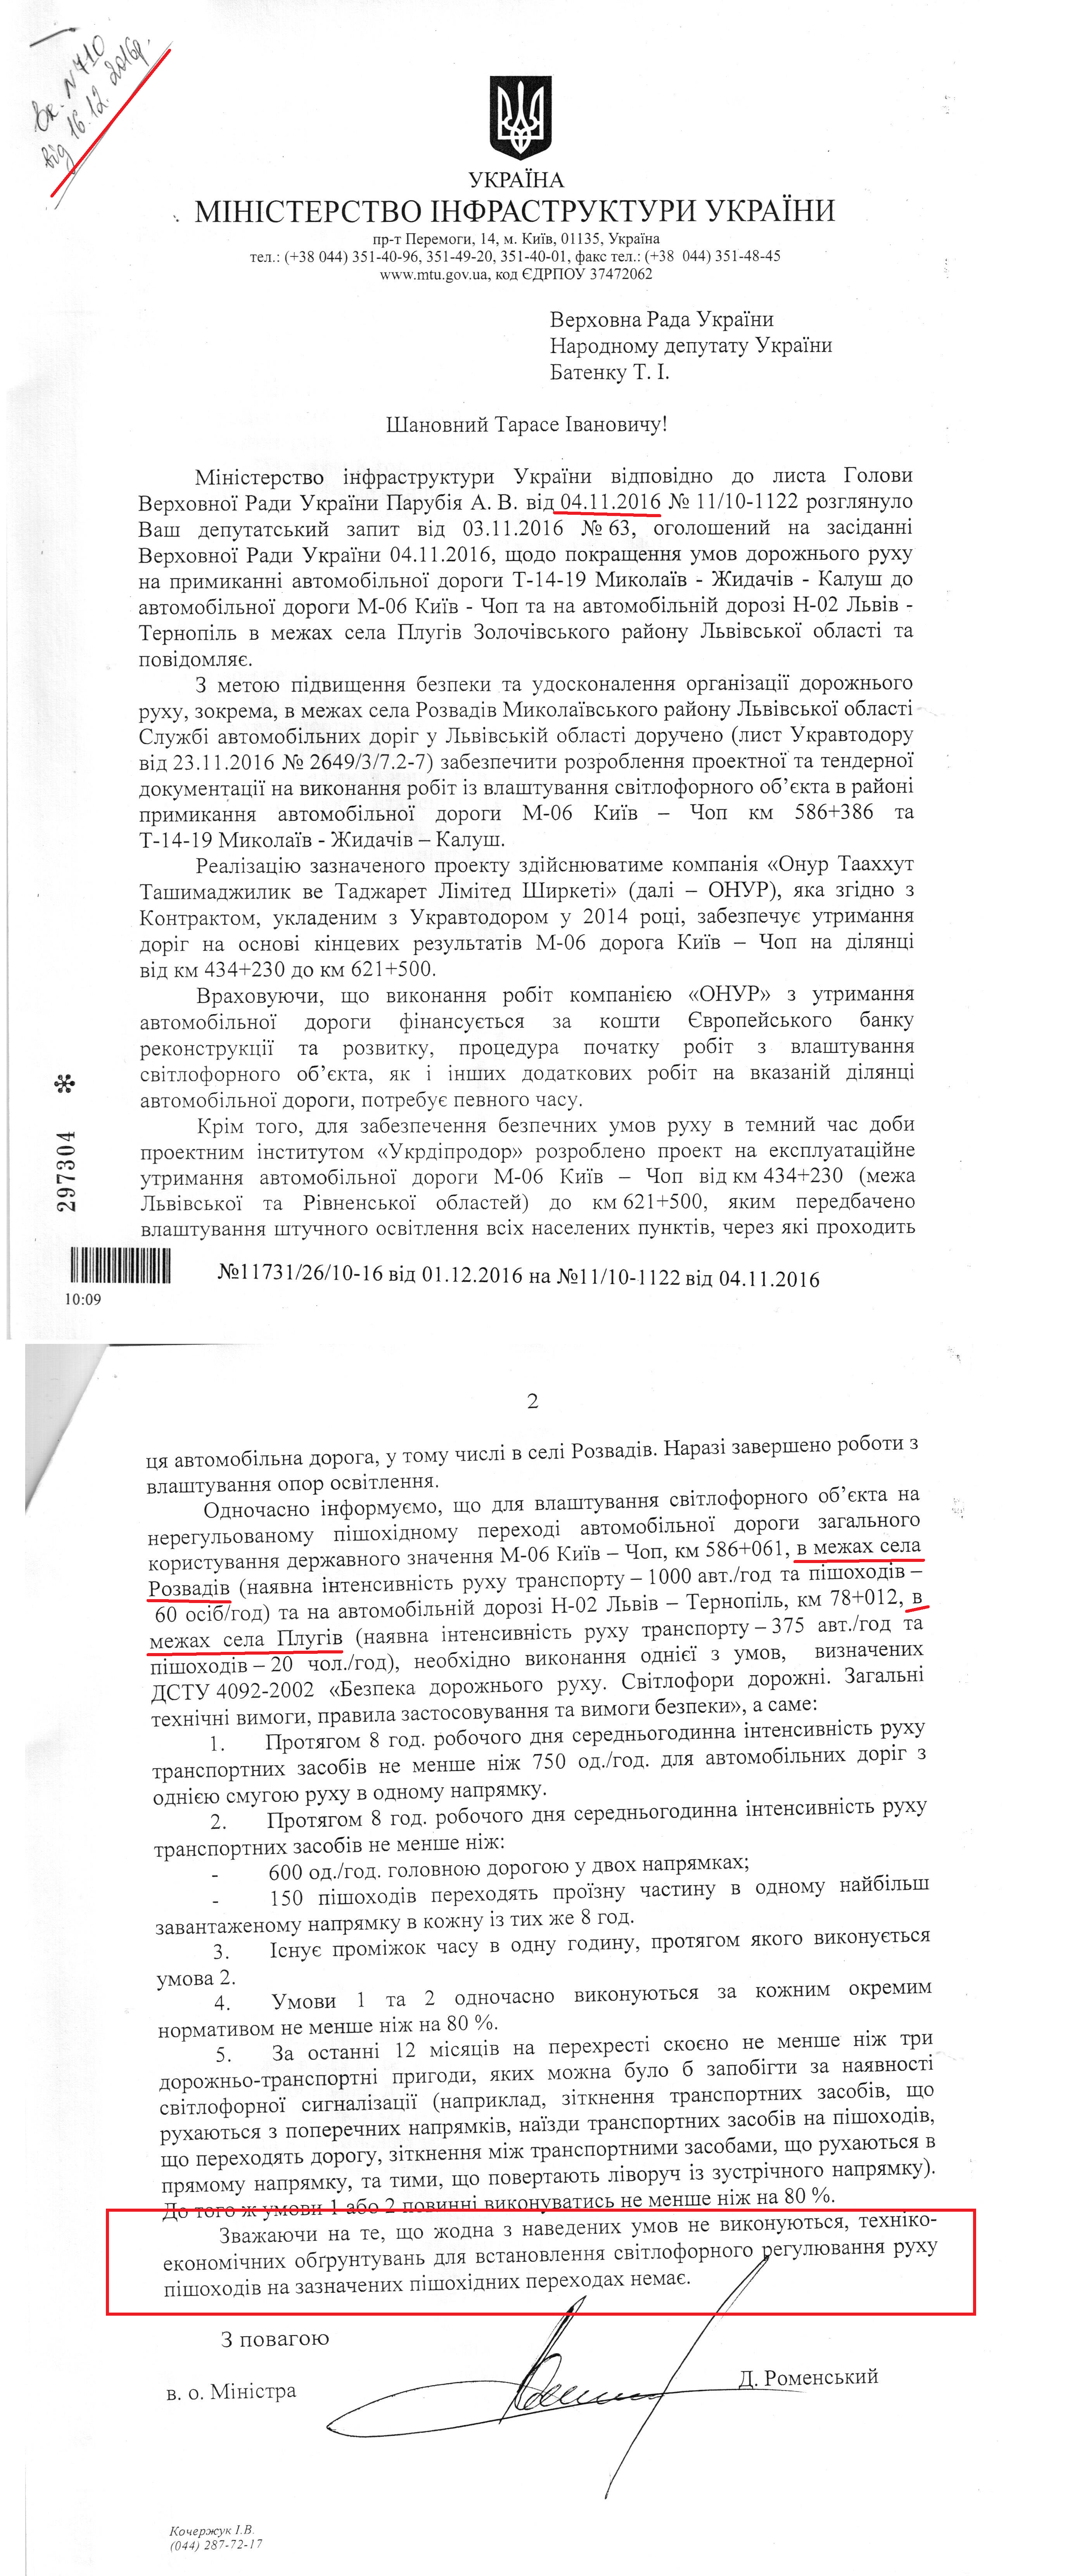 Лист від народного депутата Тараса Батенка